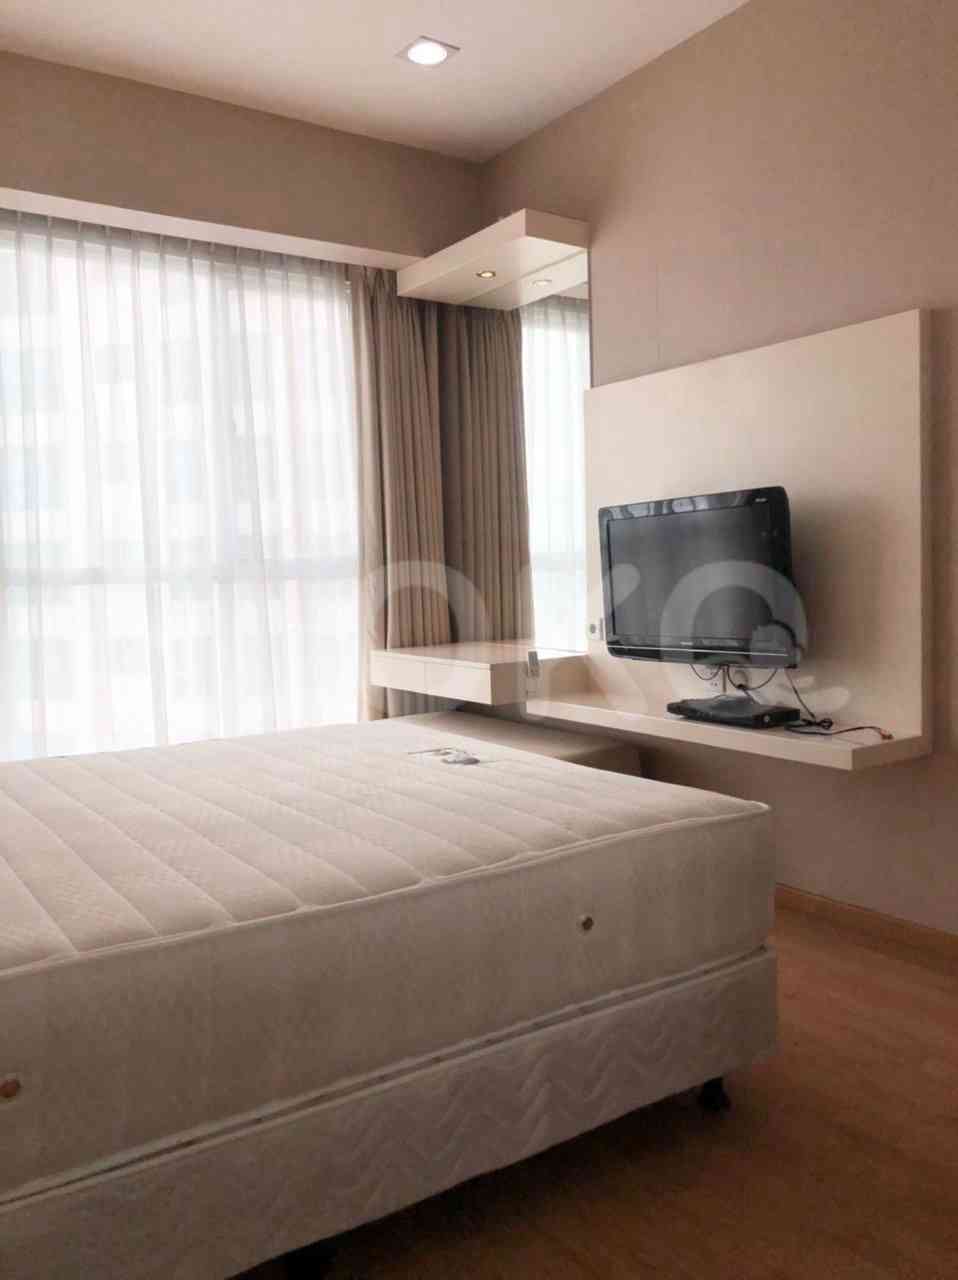 2 Bedroom on 28th Floor for Rent in Gandaria Heights  - fgad57 6